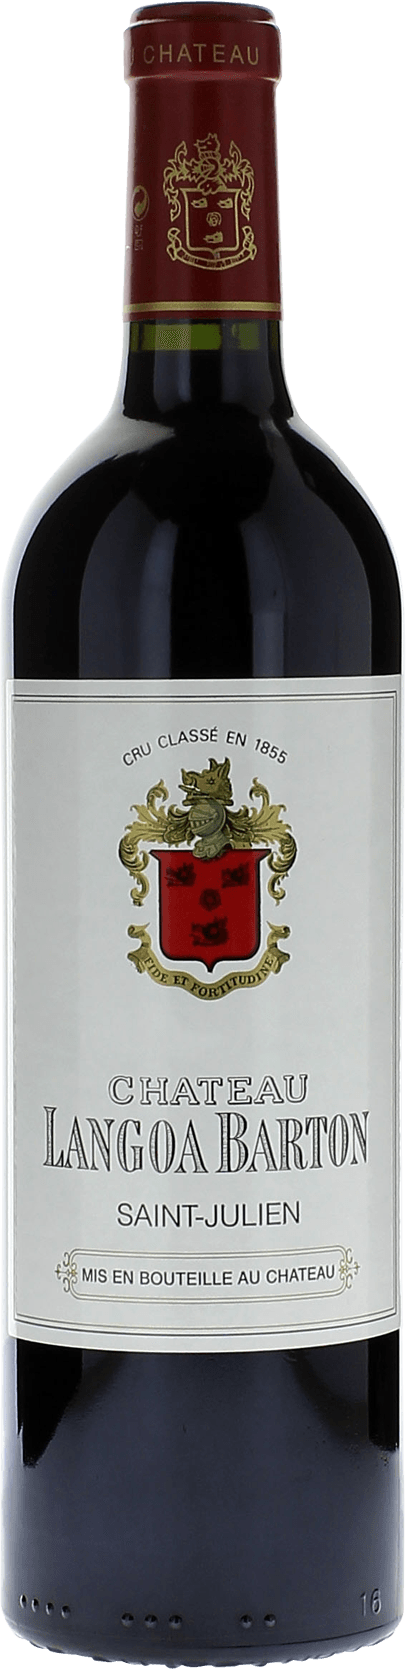 Langoa barton 2020 3me Grand cru class Saint-Julien, Bordeaux rouge